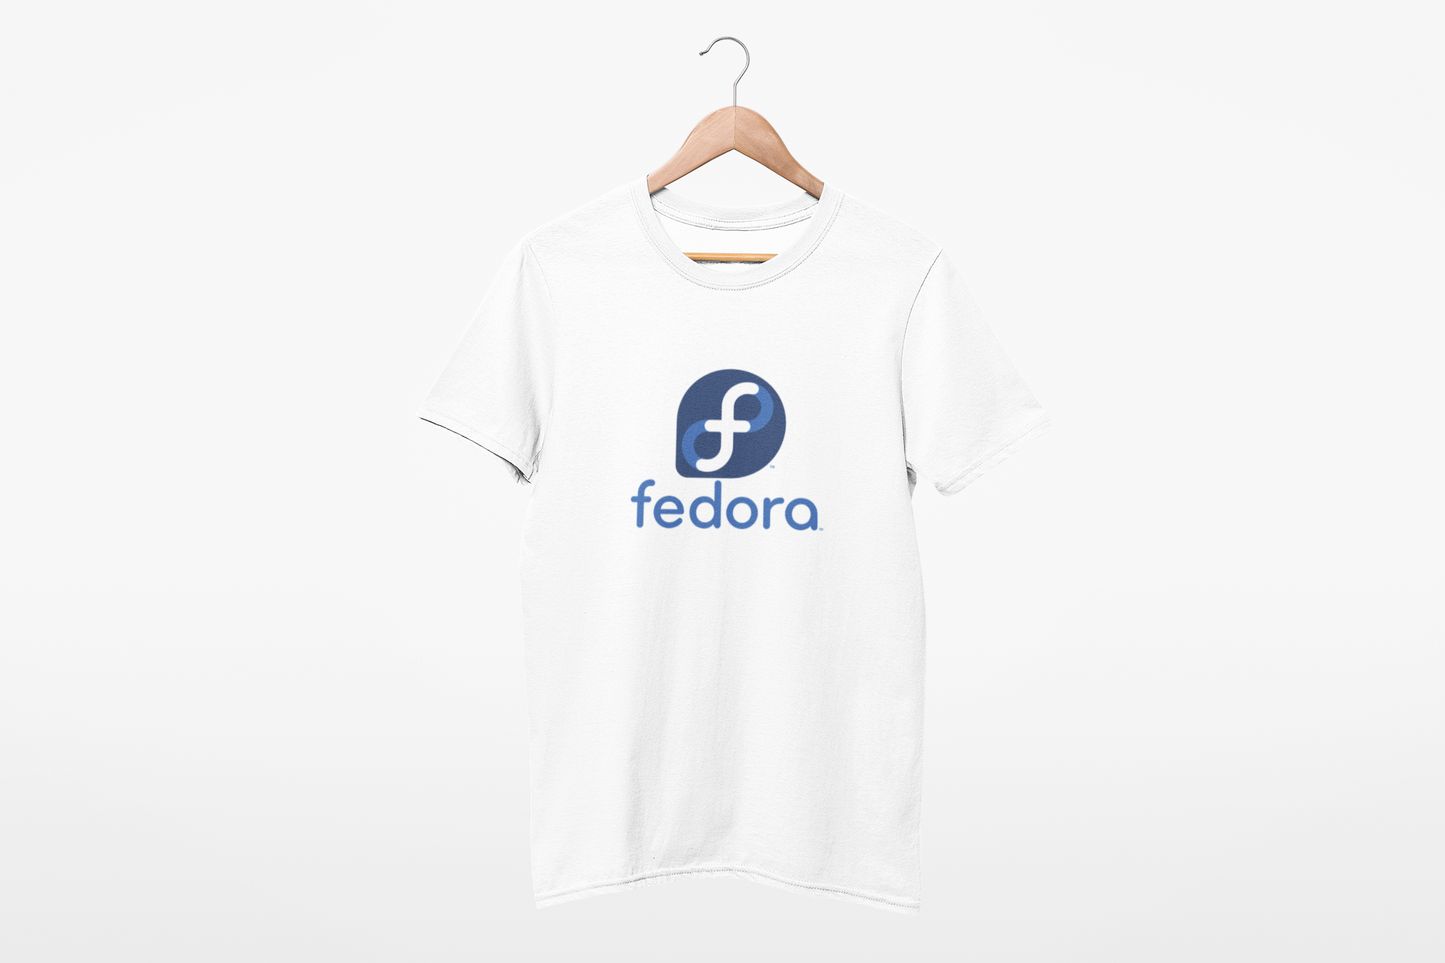 Fedora T SHIRT